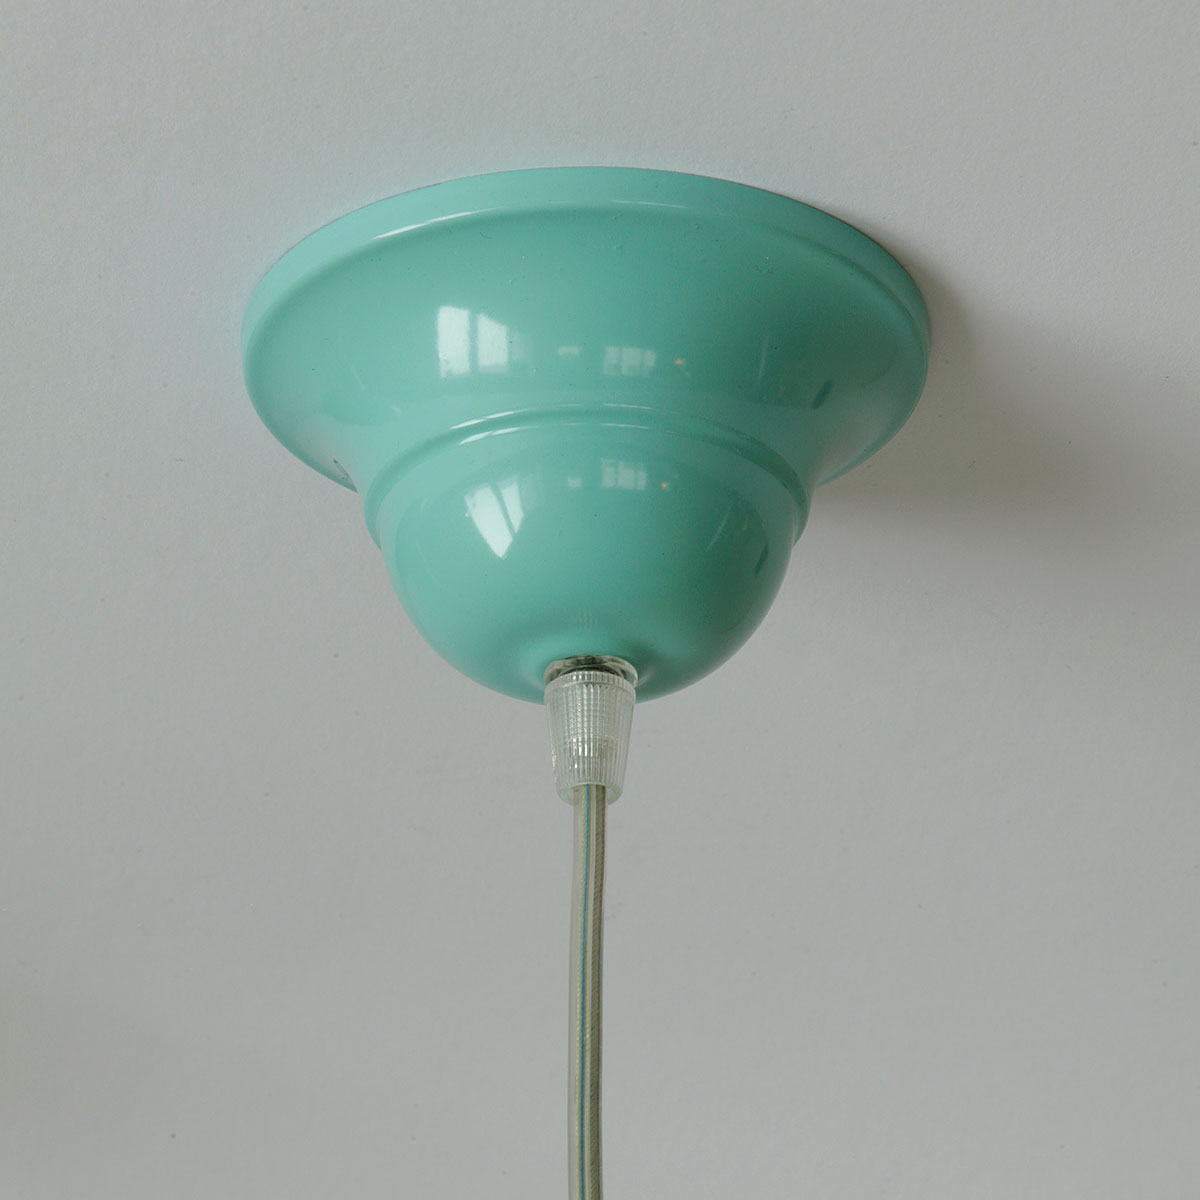 Einfache Pendelleuchte mit flachem Metall-Schirm, viele Farben: Der Baldachin in RAL 6027 Lichtgrün, Ø 11 cm (Sondermodell mit Transparent-Kabel)